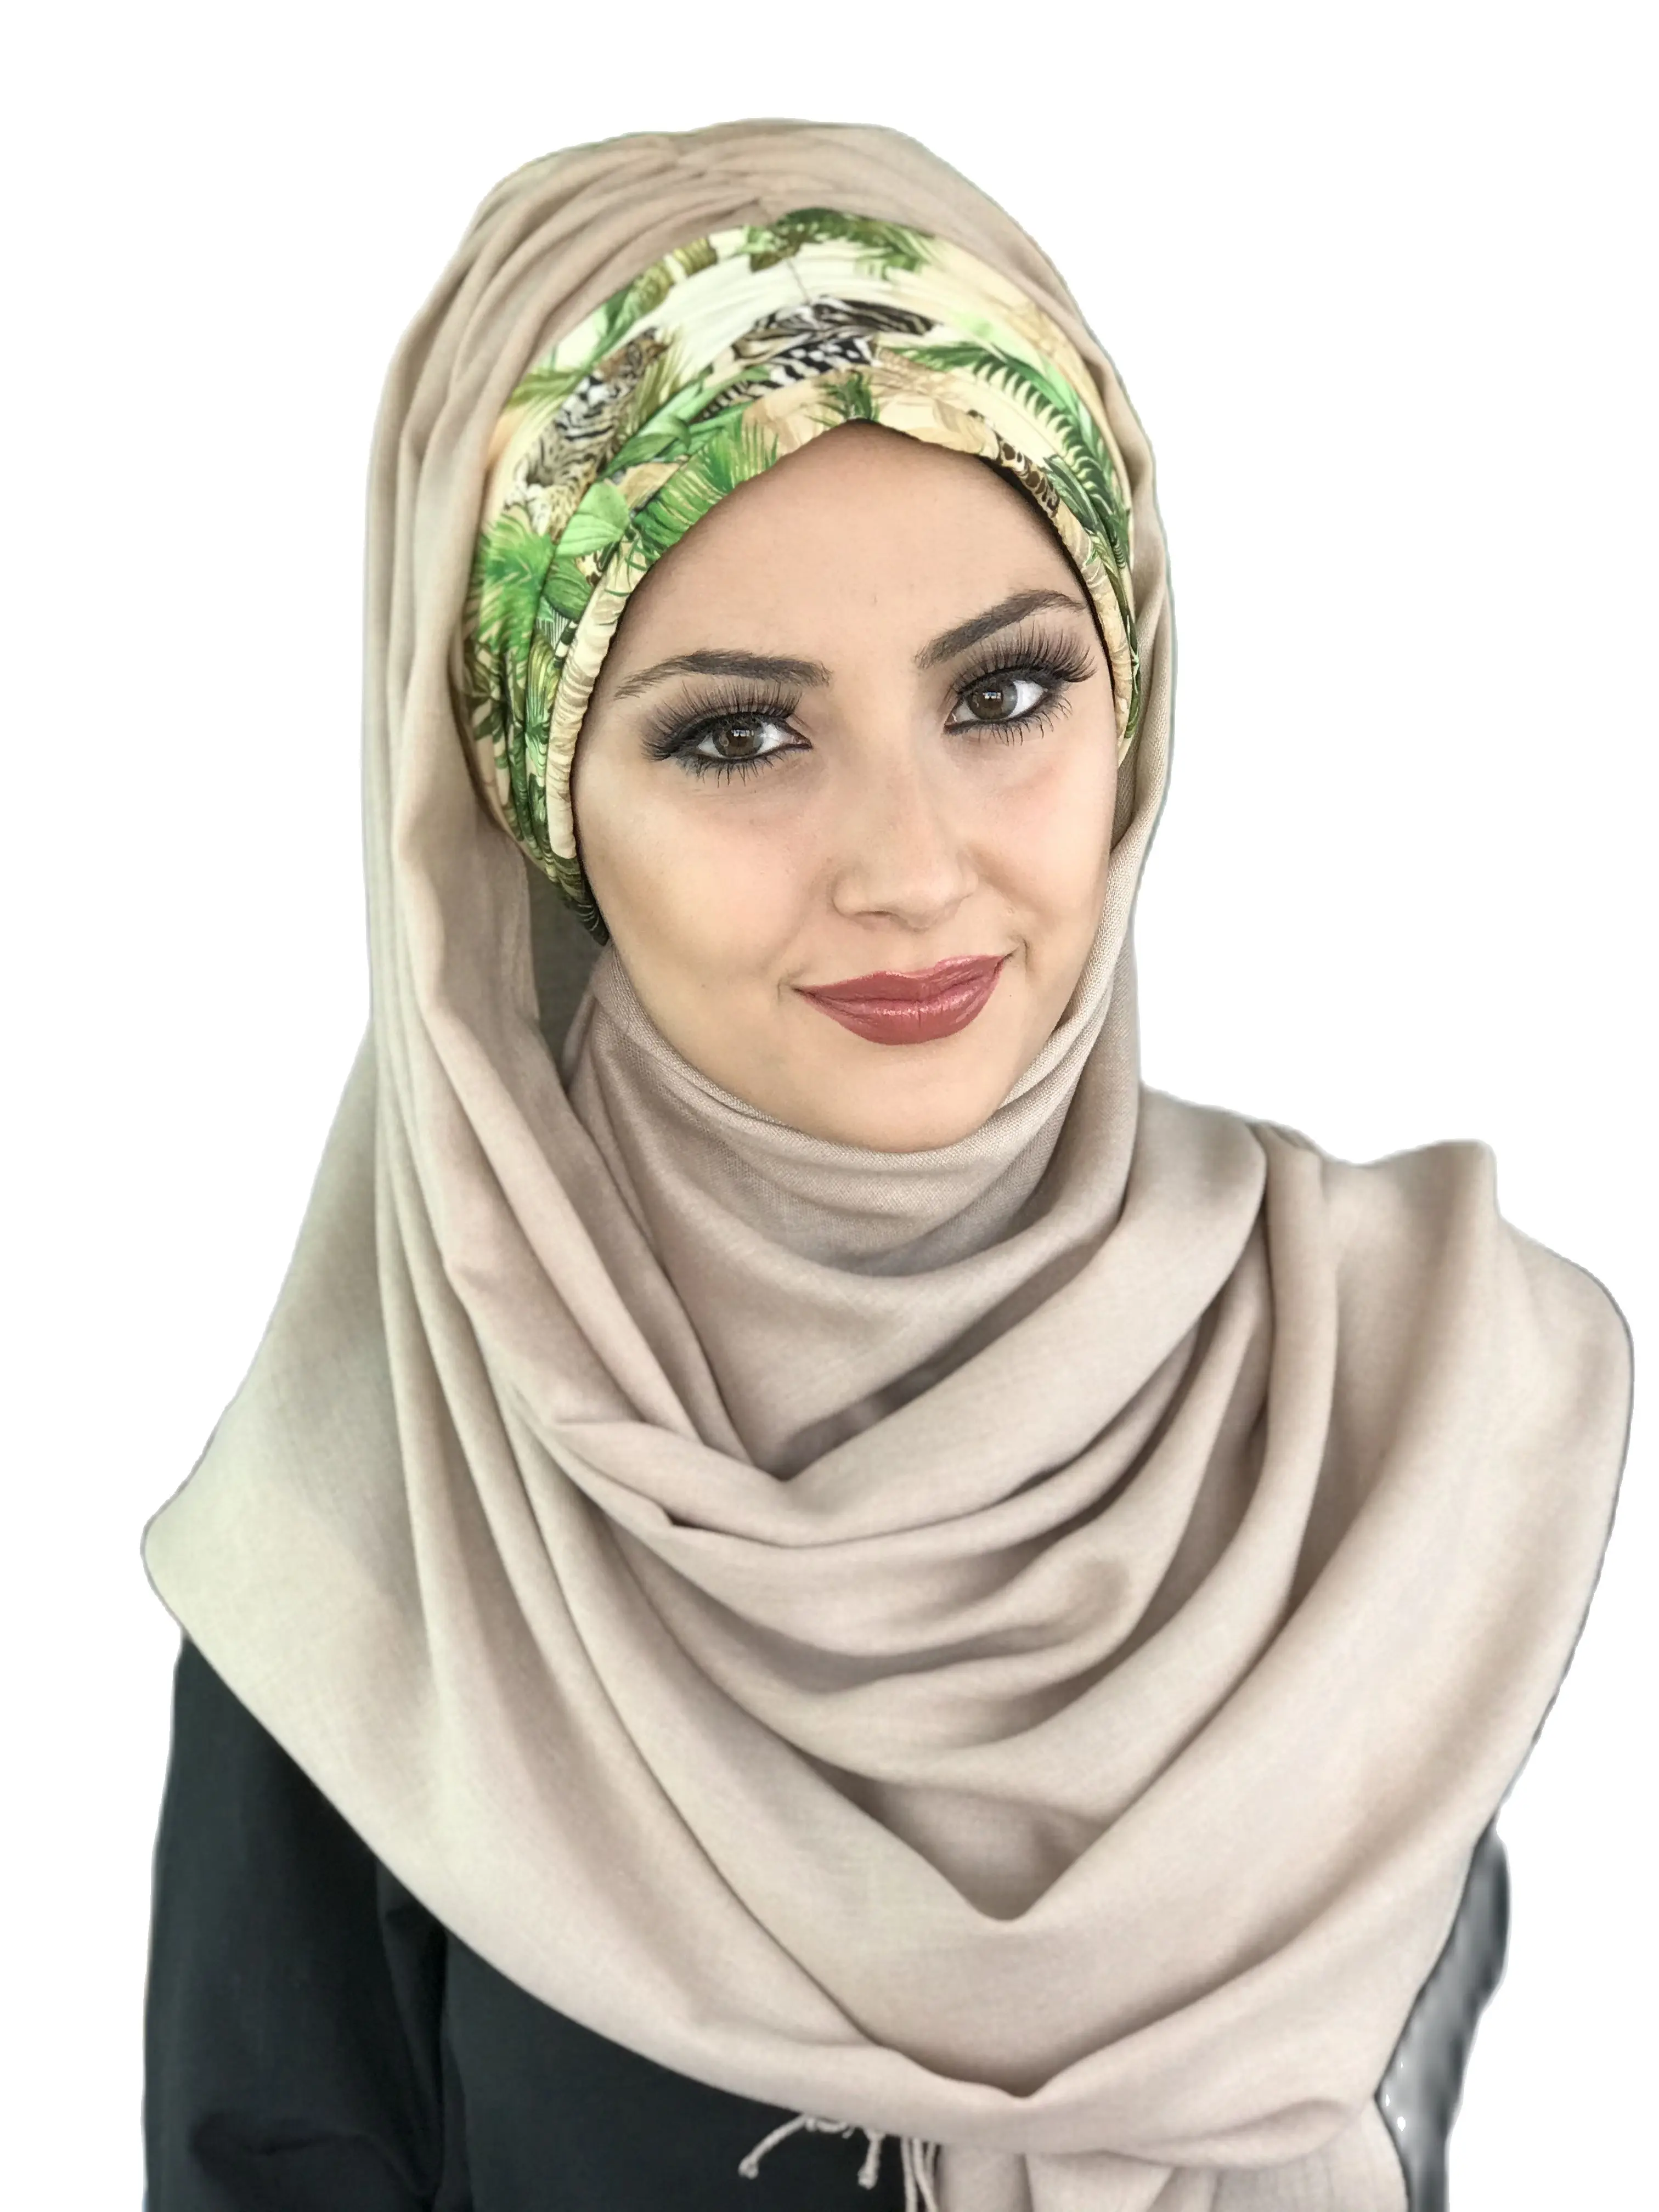 

New Fashion Hijab 2021 Women Muslim Chiffon Islamic Bonnet Hijab Hat Stone Color Green Leaf Detailed Pleated Ready Shawl